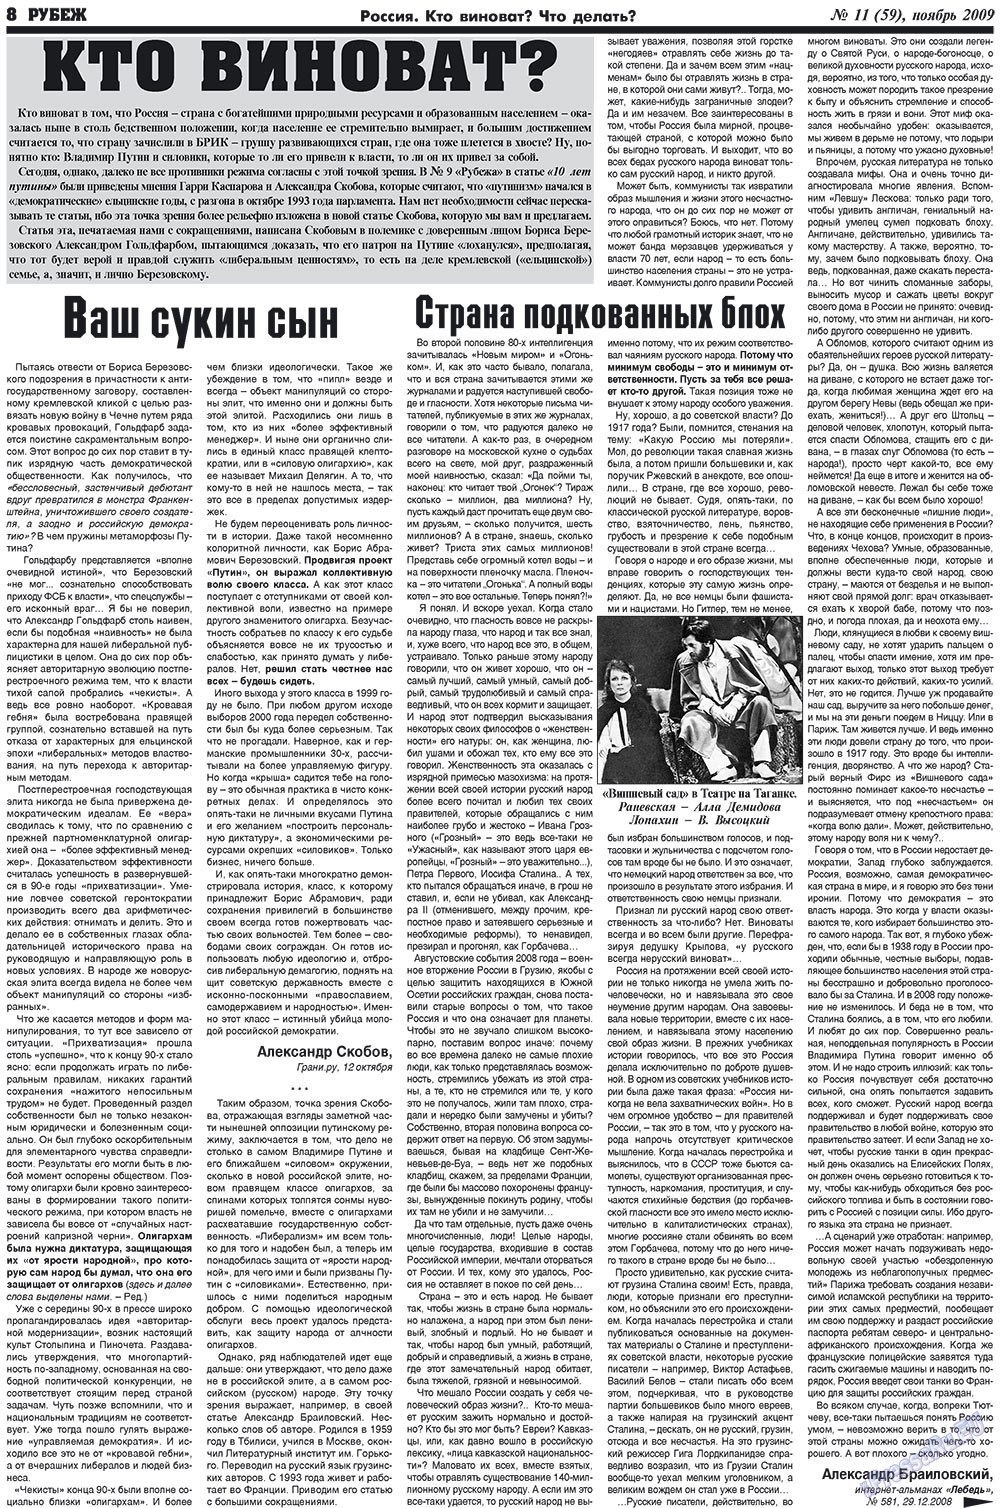 Рубеж (газета). 2009 год, номер 11, стр. 8